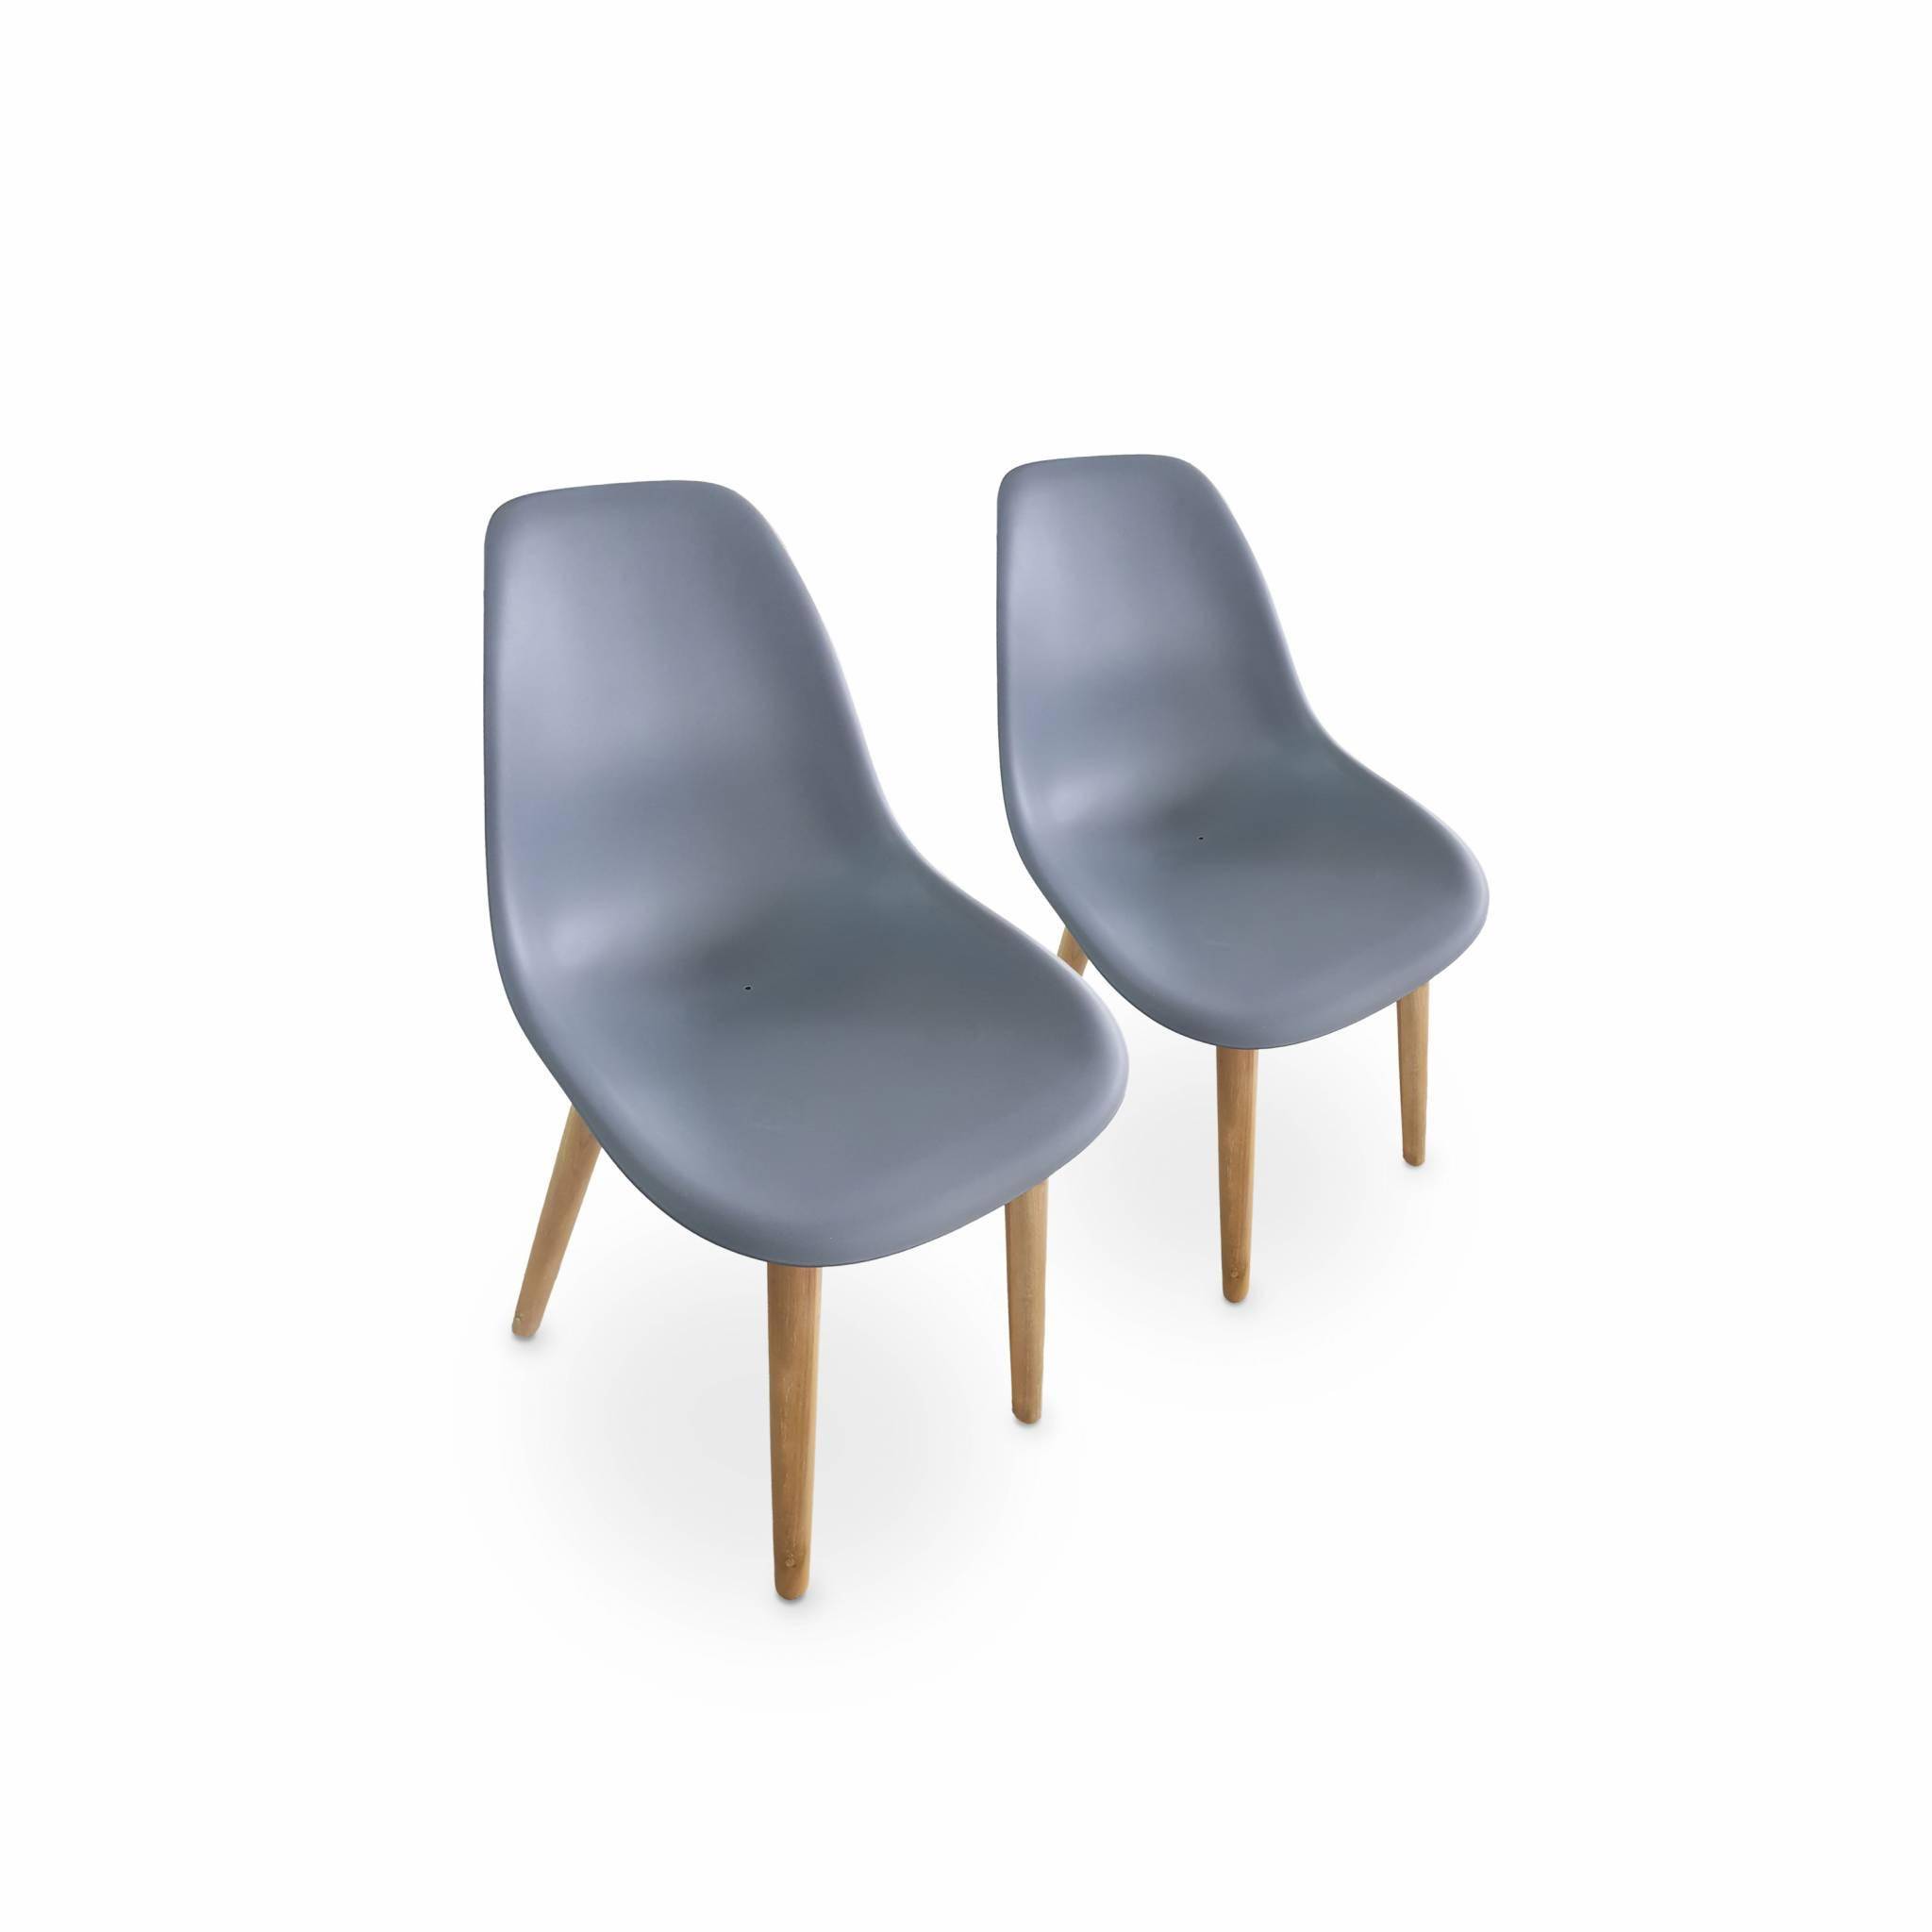 2er Set skandinavische Stühle Penida, aus Akazienholz und anthrazitfarbenem Kunstharz gespritzt, innen/außen Photo1